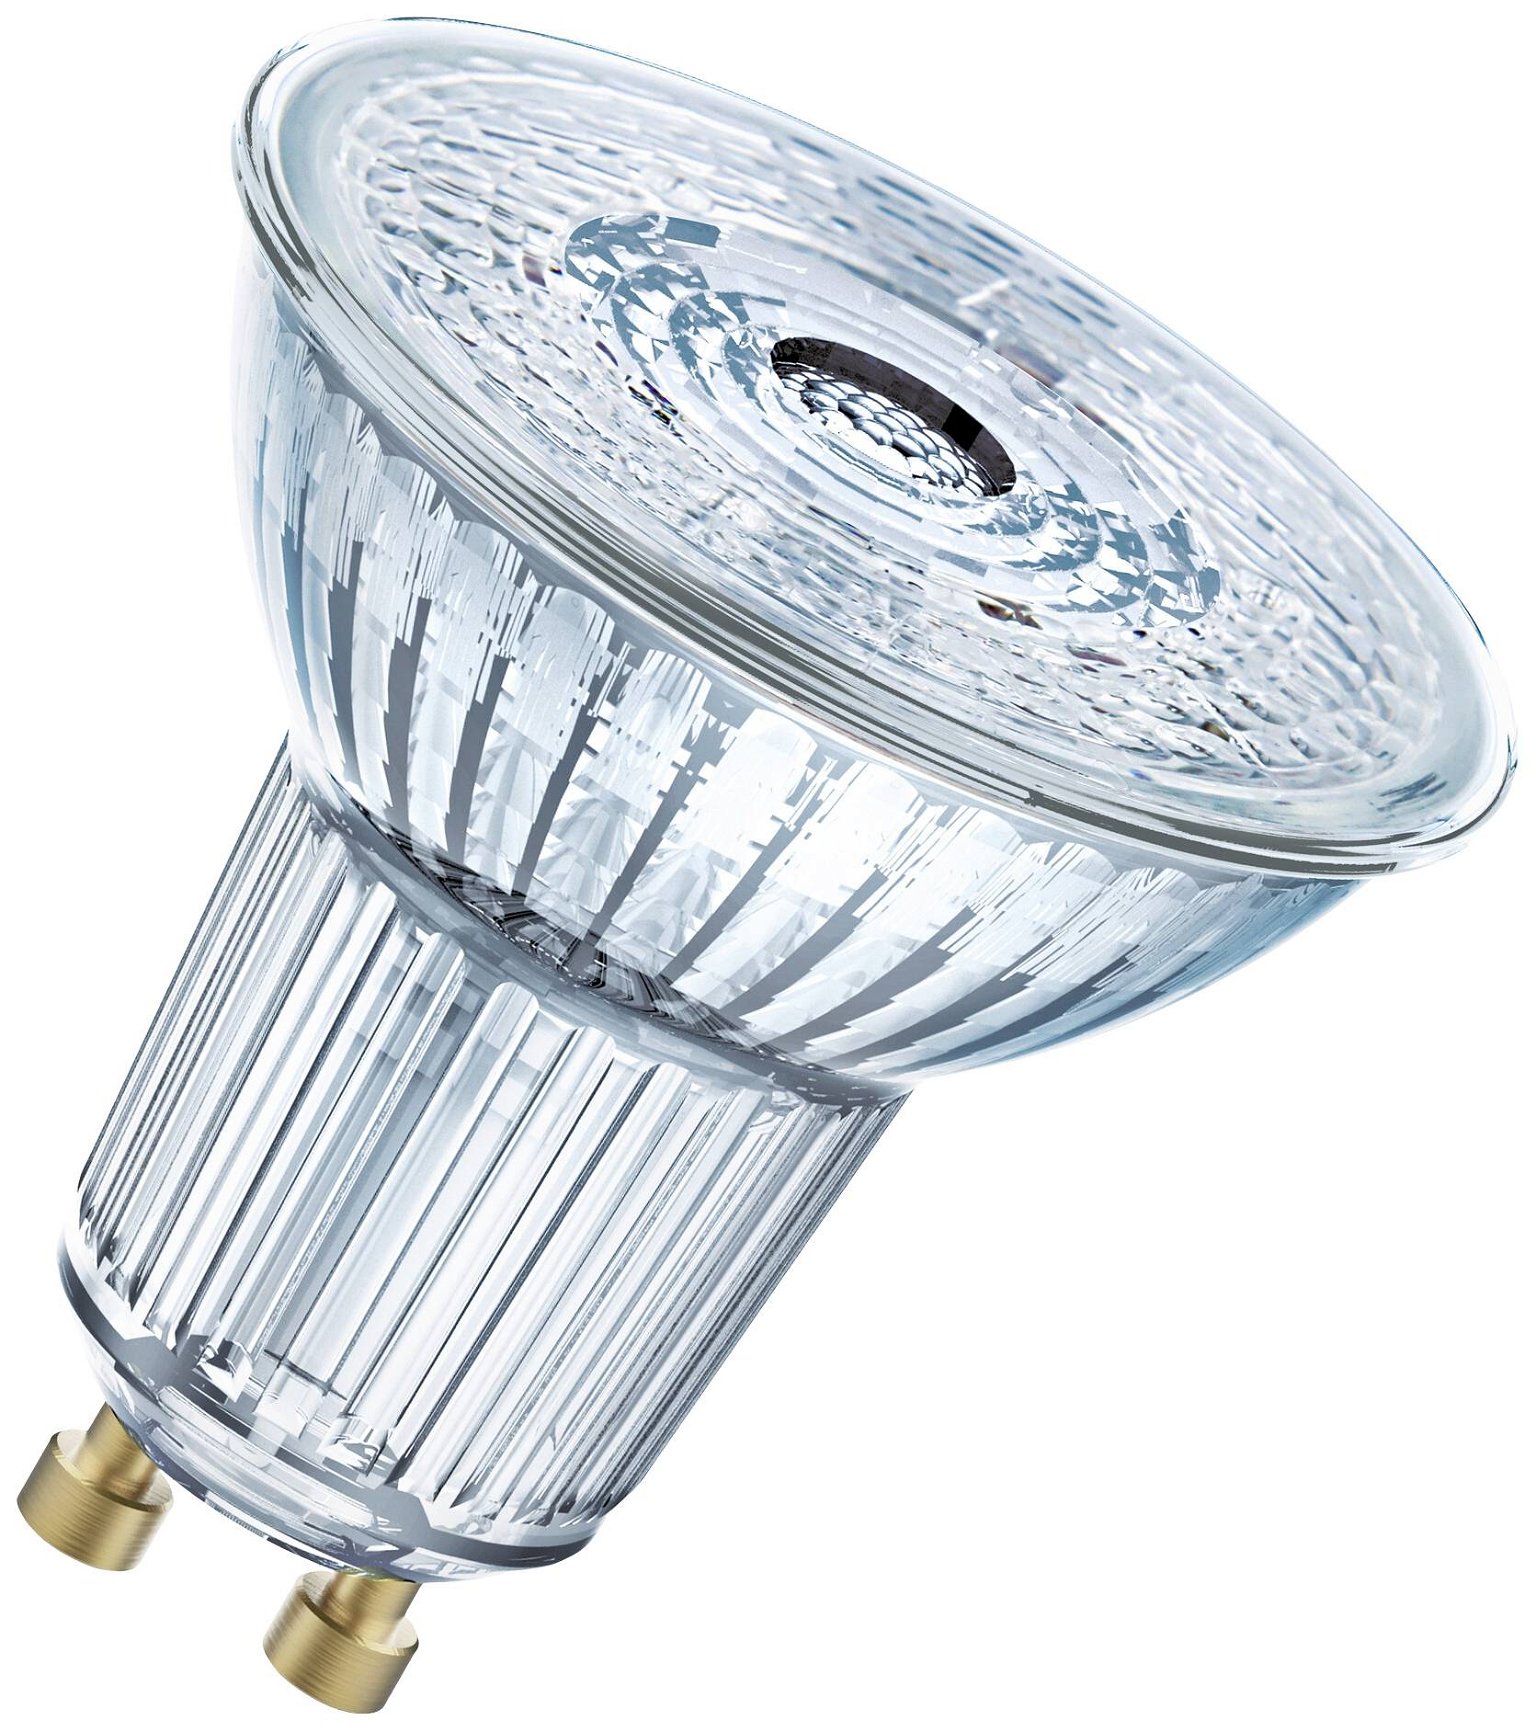 LED lemputė OSRAM, GU10, PAR16 50, reflektorinė, 4,5W, 4000K, 36°, 350 lm, dimeriuojama - 1